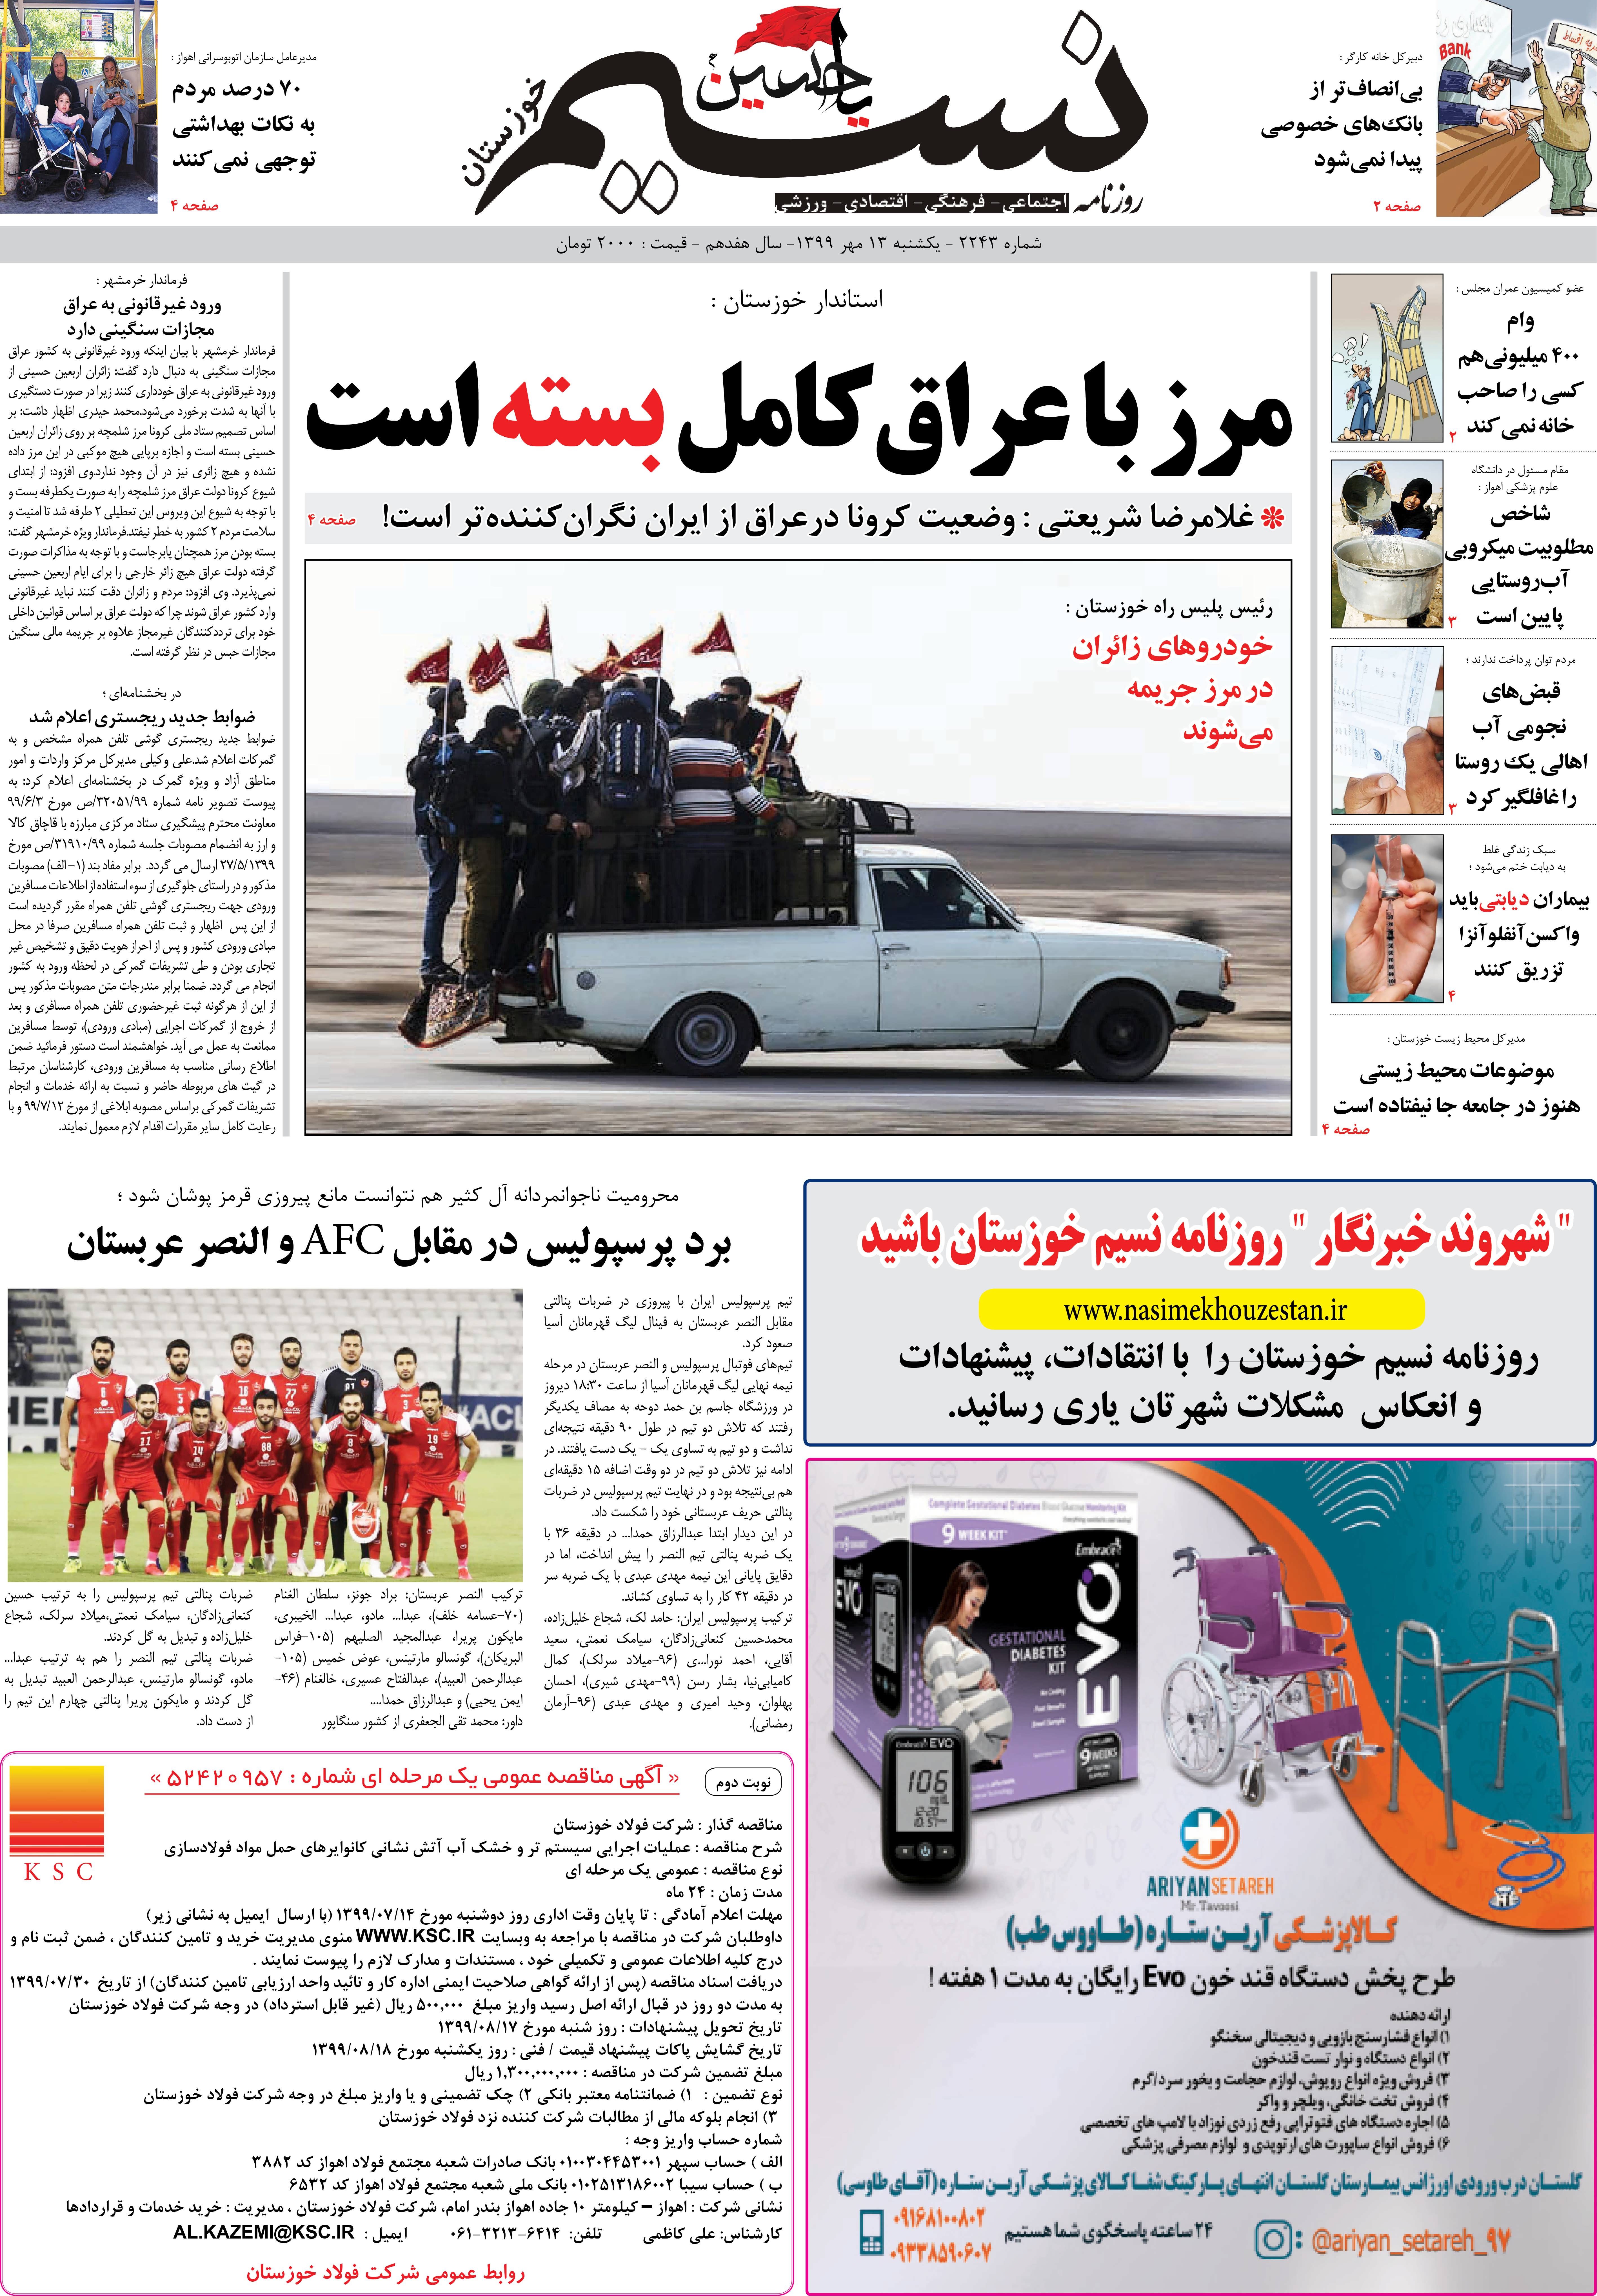 صفحه اصلی روزنامه نسیم شماره 2243 